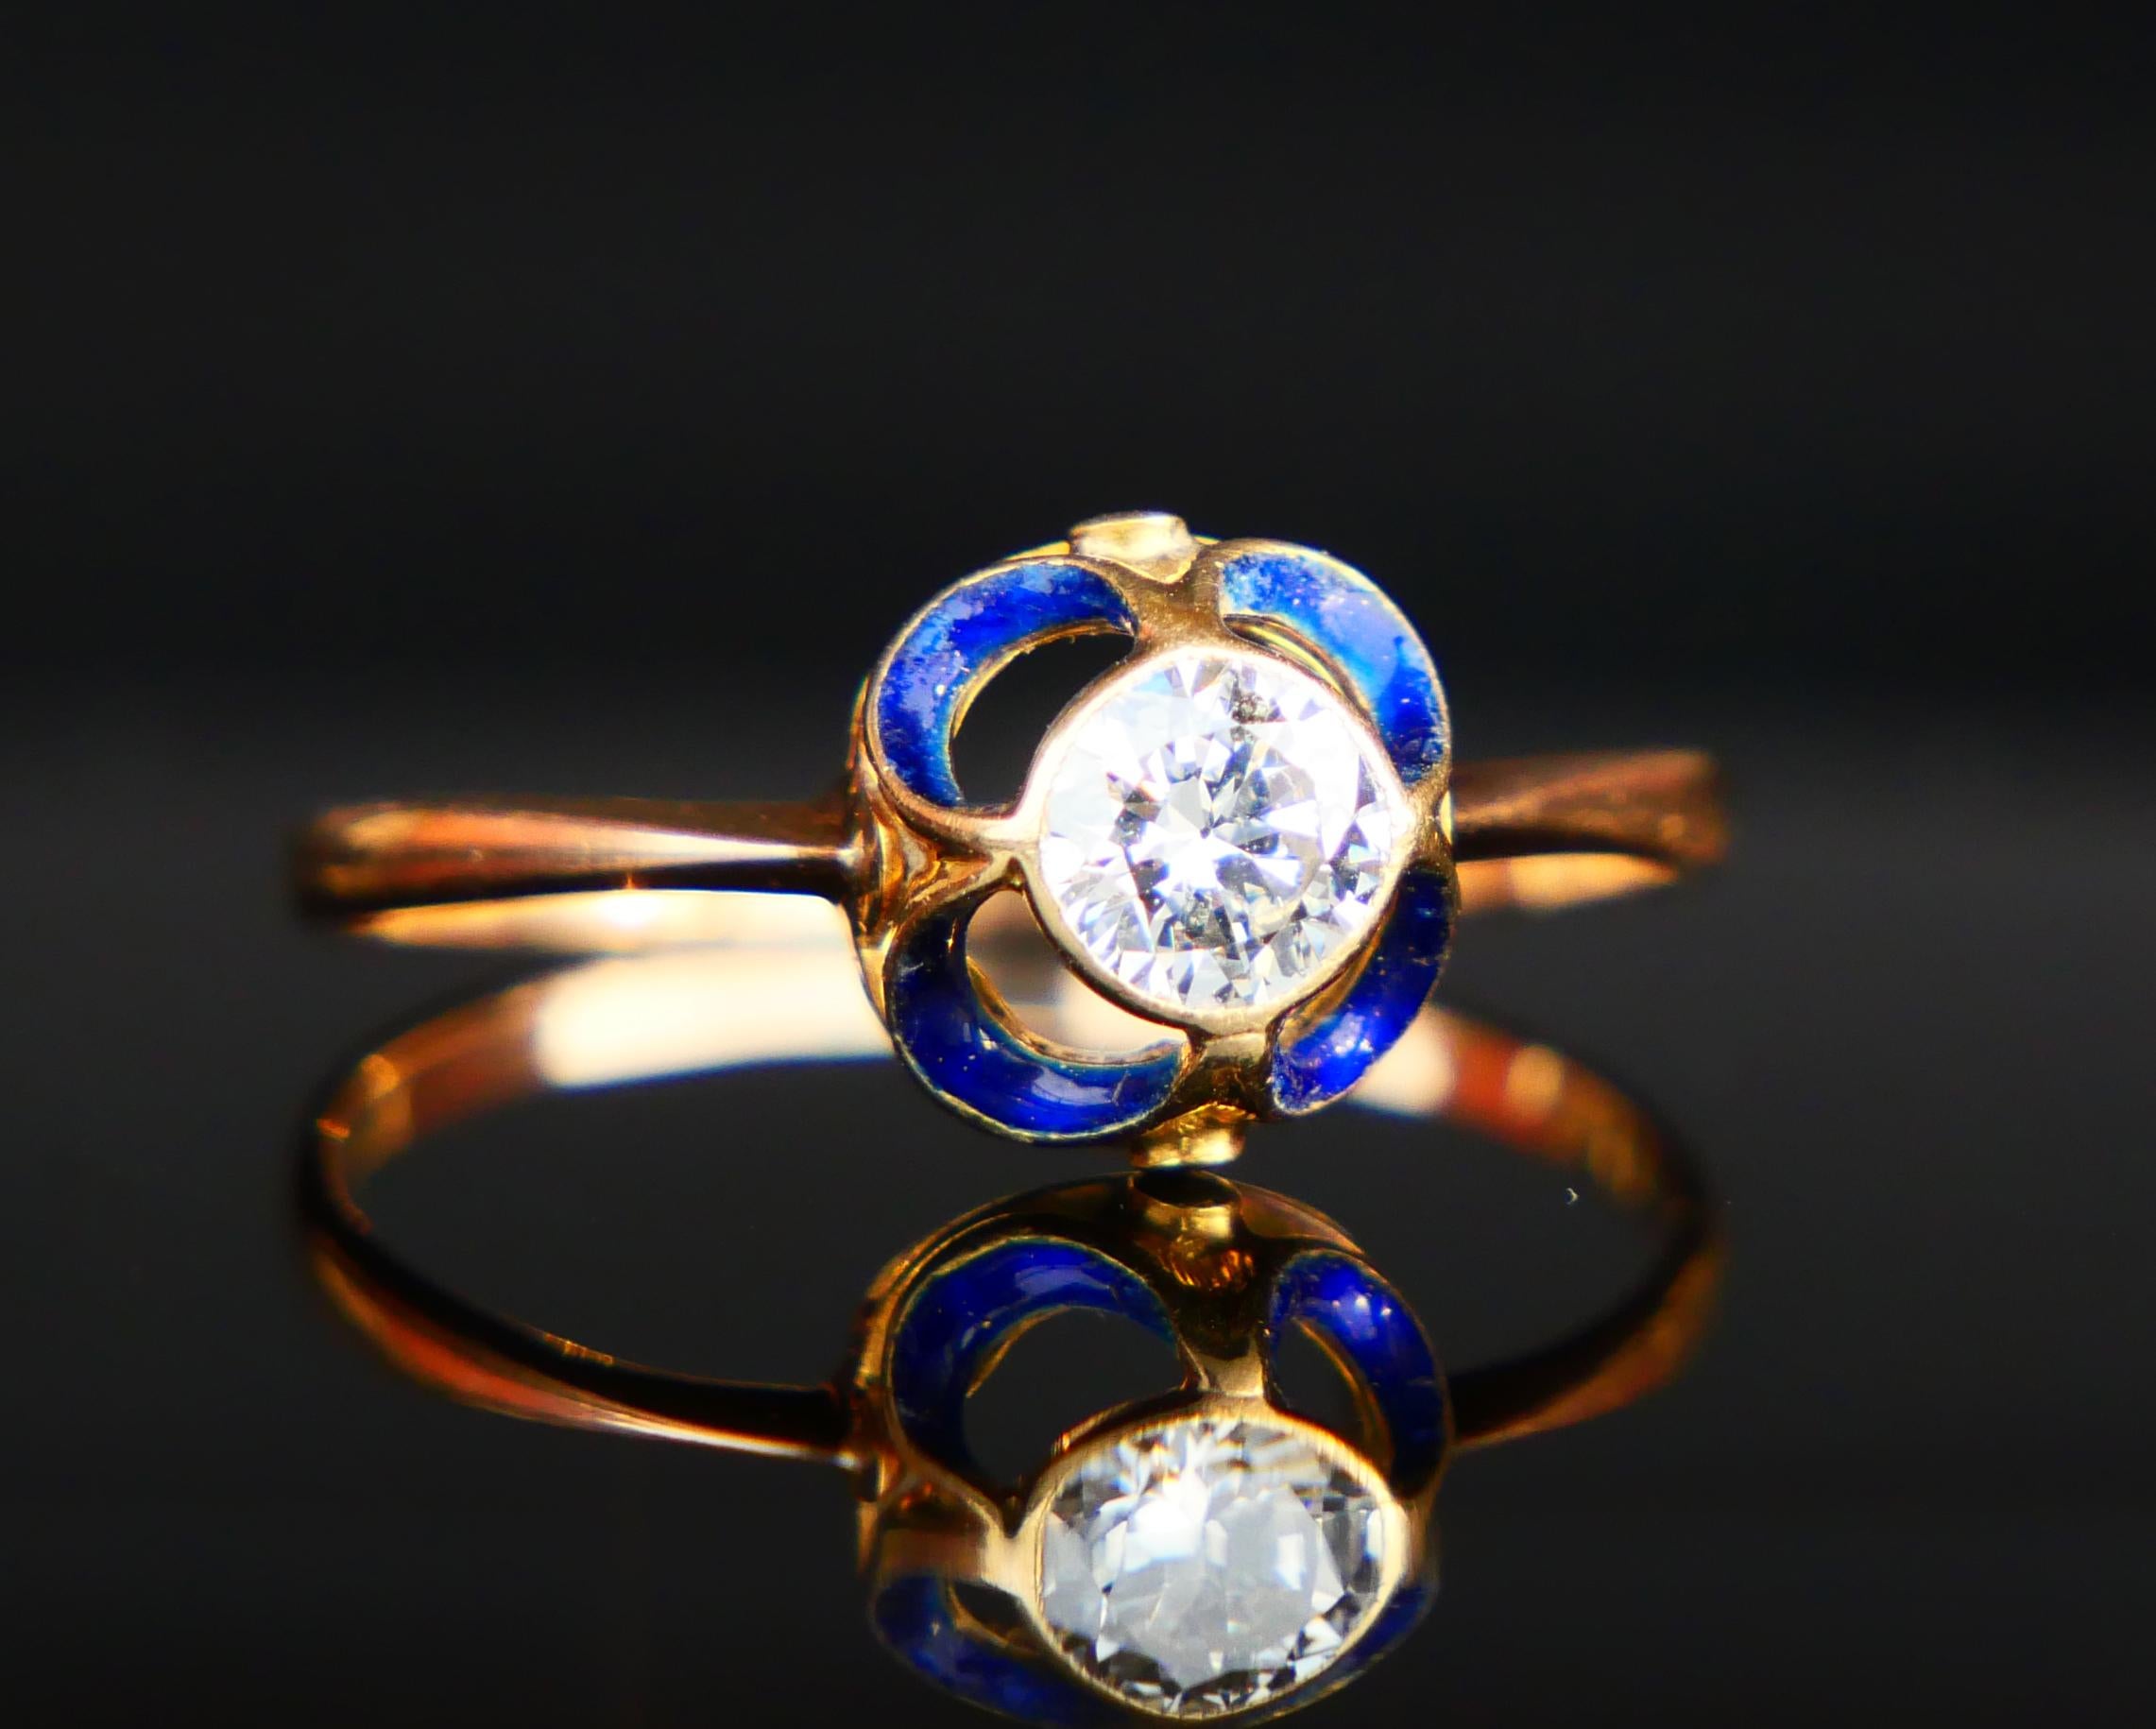 1904 Nordic Art Nouveau Ring 05ct. Diamond Blue Enamel 18K Gold ØUS9.5/2.5gr 5